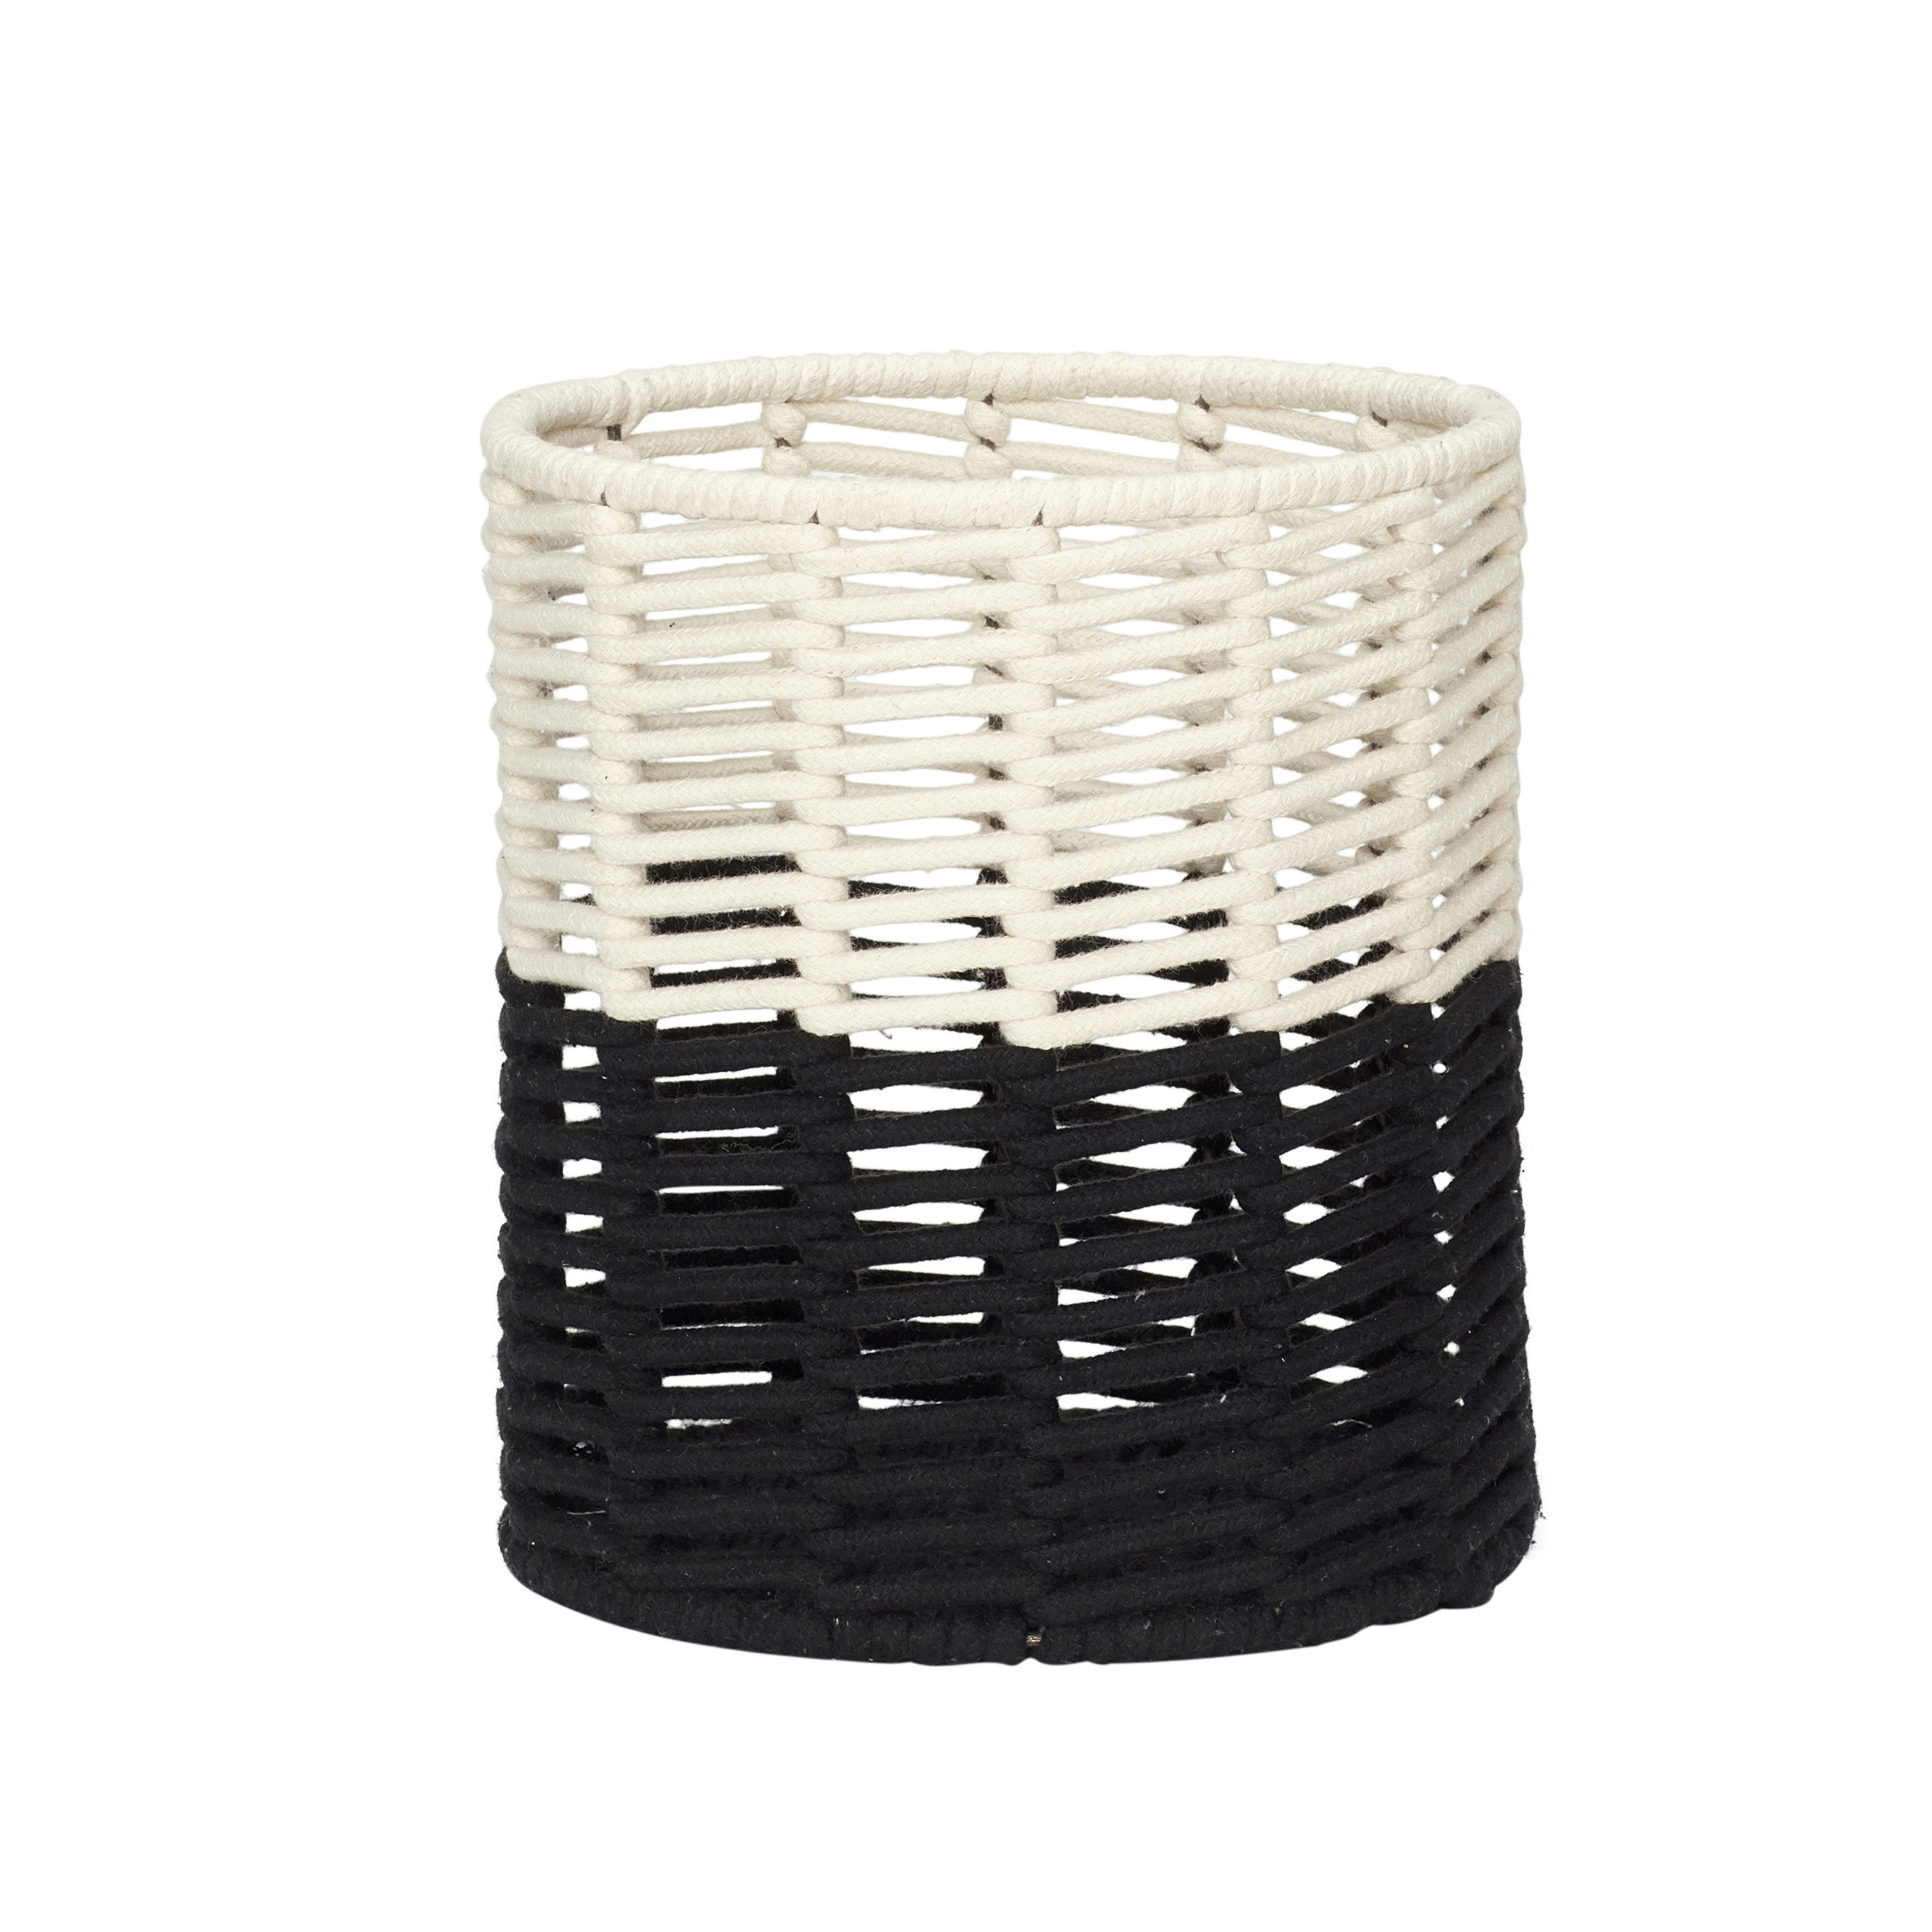 Hubsch Cream and Black Round Cotton Rope Basket Medium